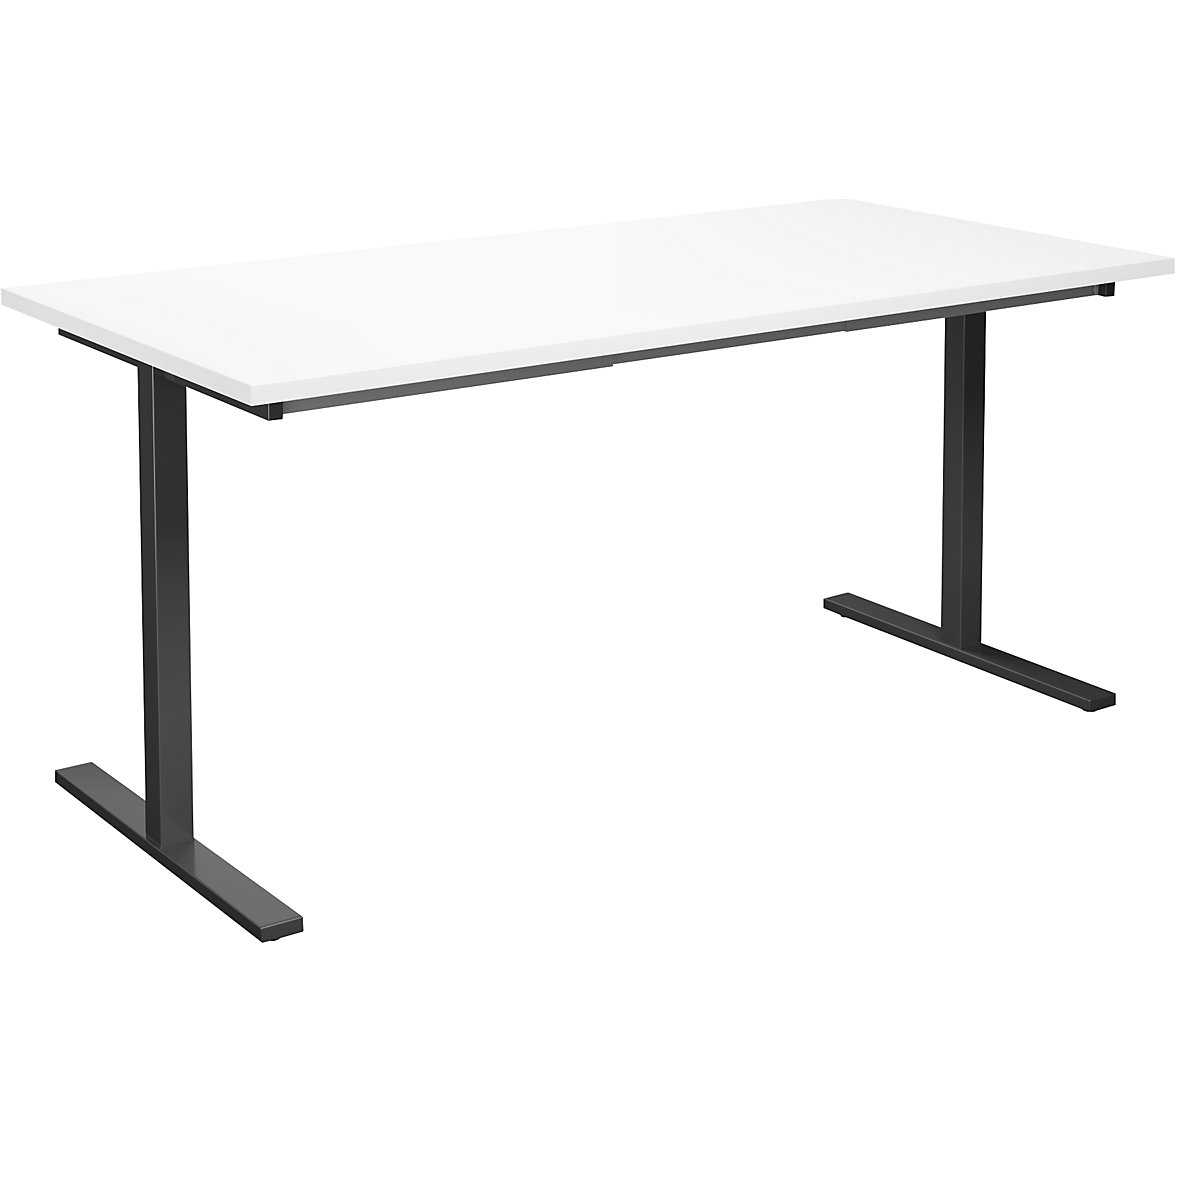 DUO-T multi-purpose desk, straight tabletop, WxD 1600 x 800 mm, white, black-5